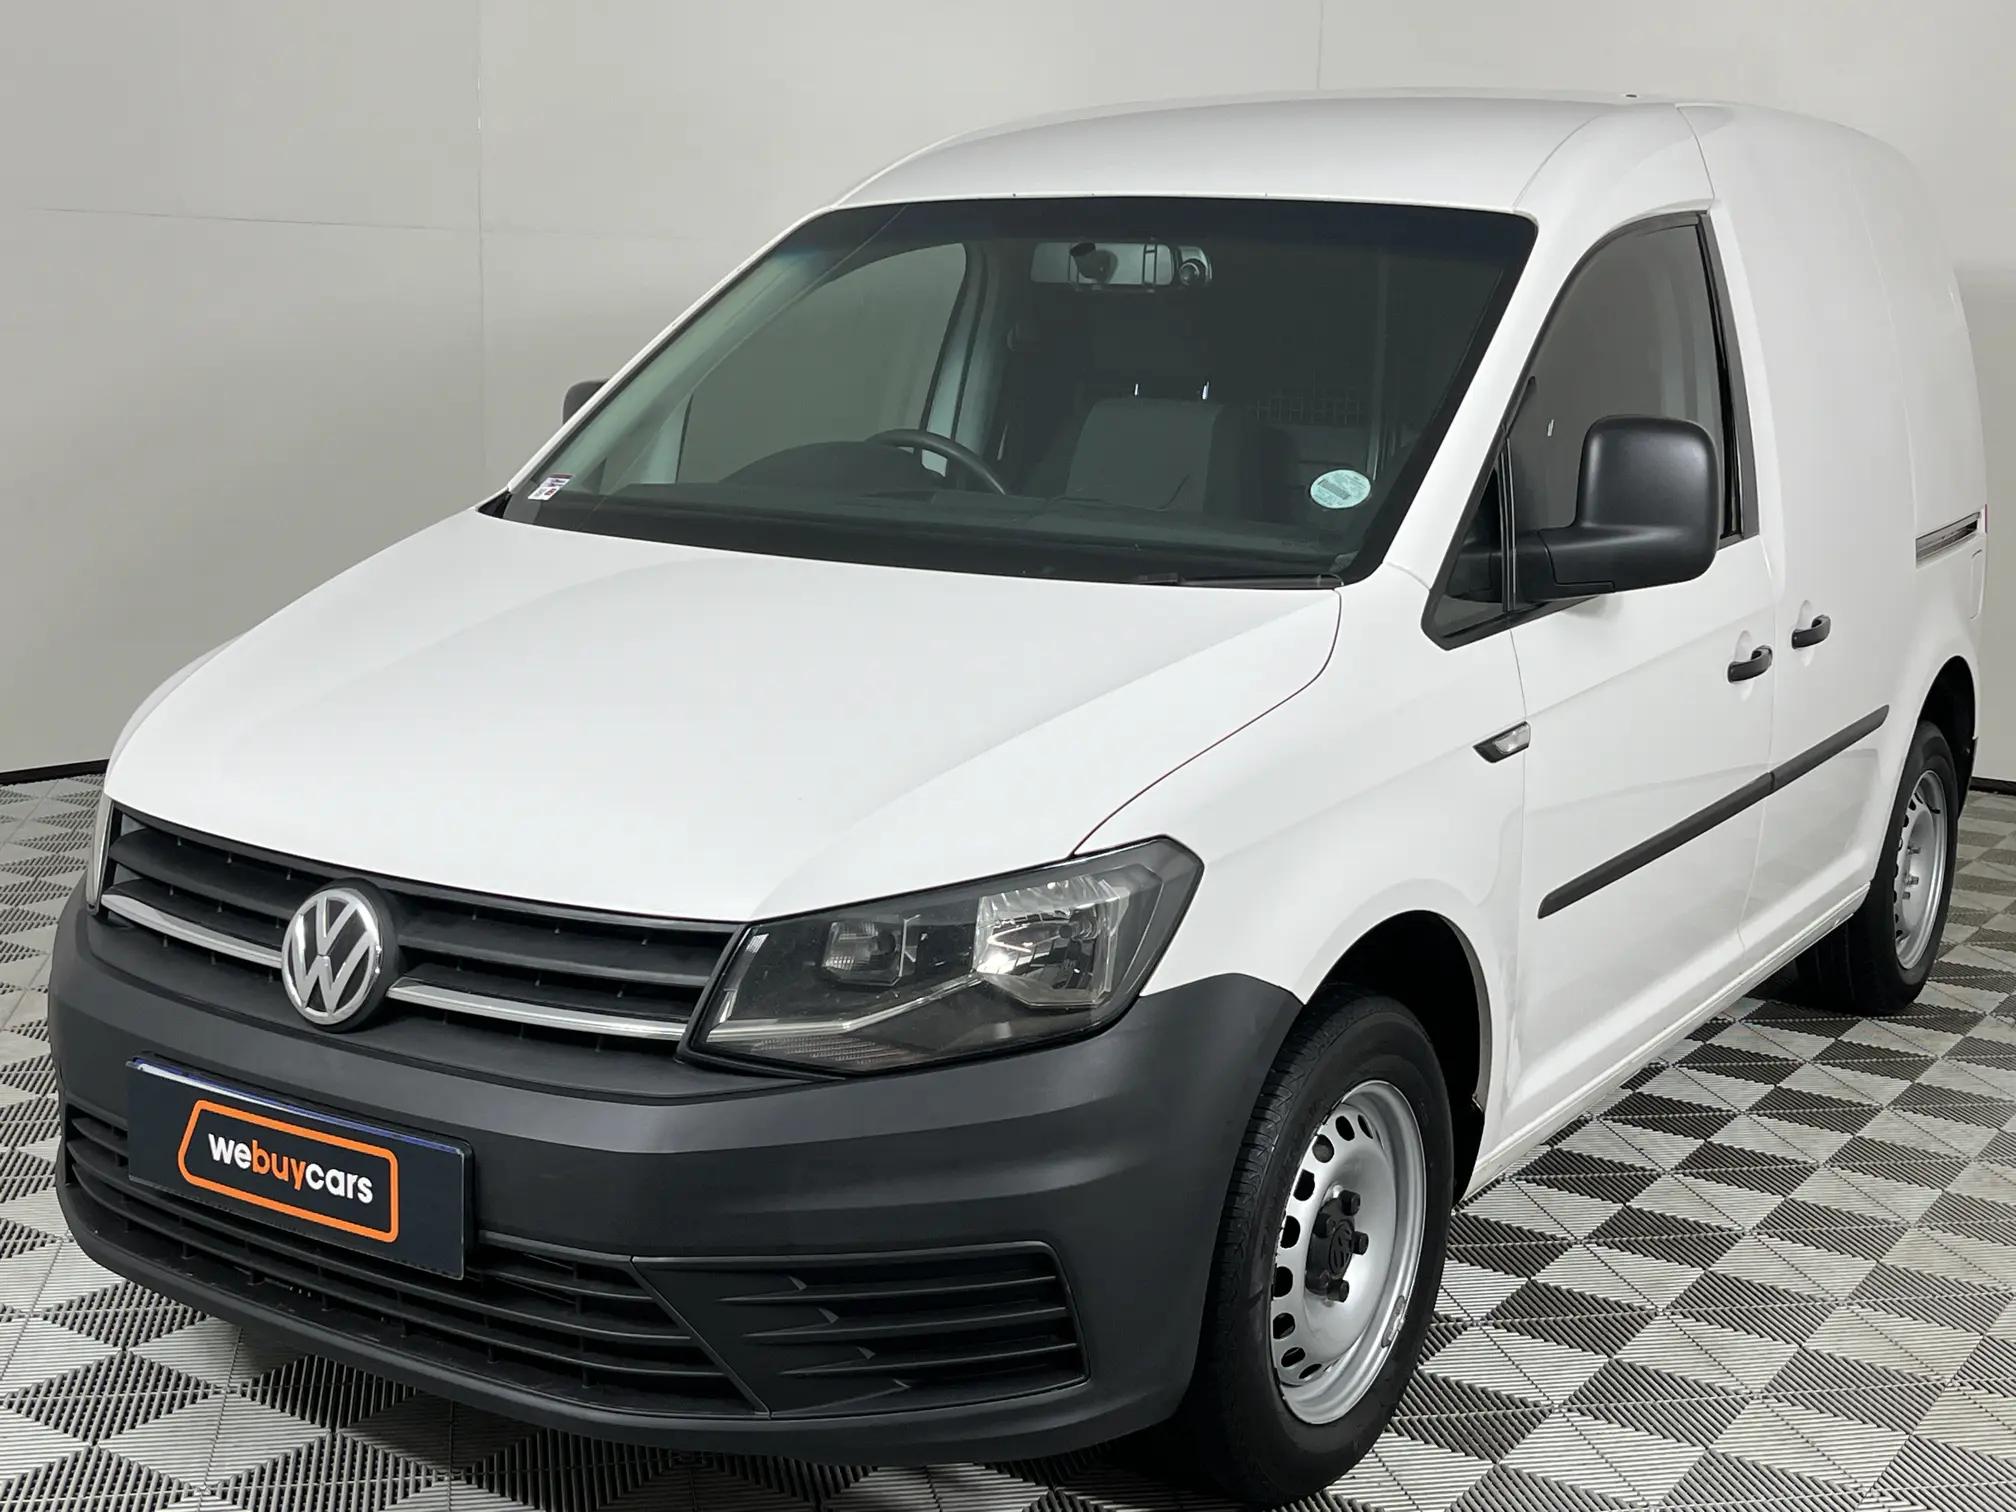 Volkswagen (VW) Caddy 1.6 (81 kW) Panel Van